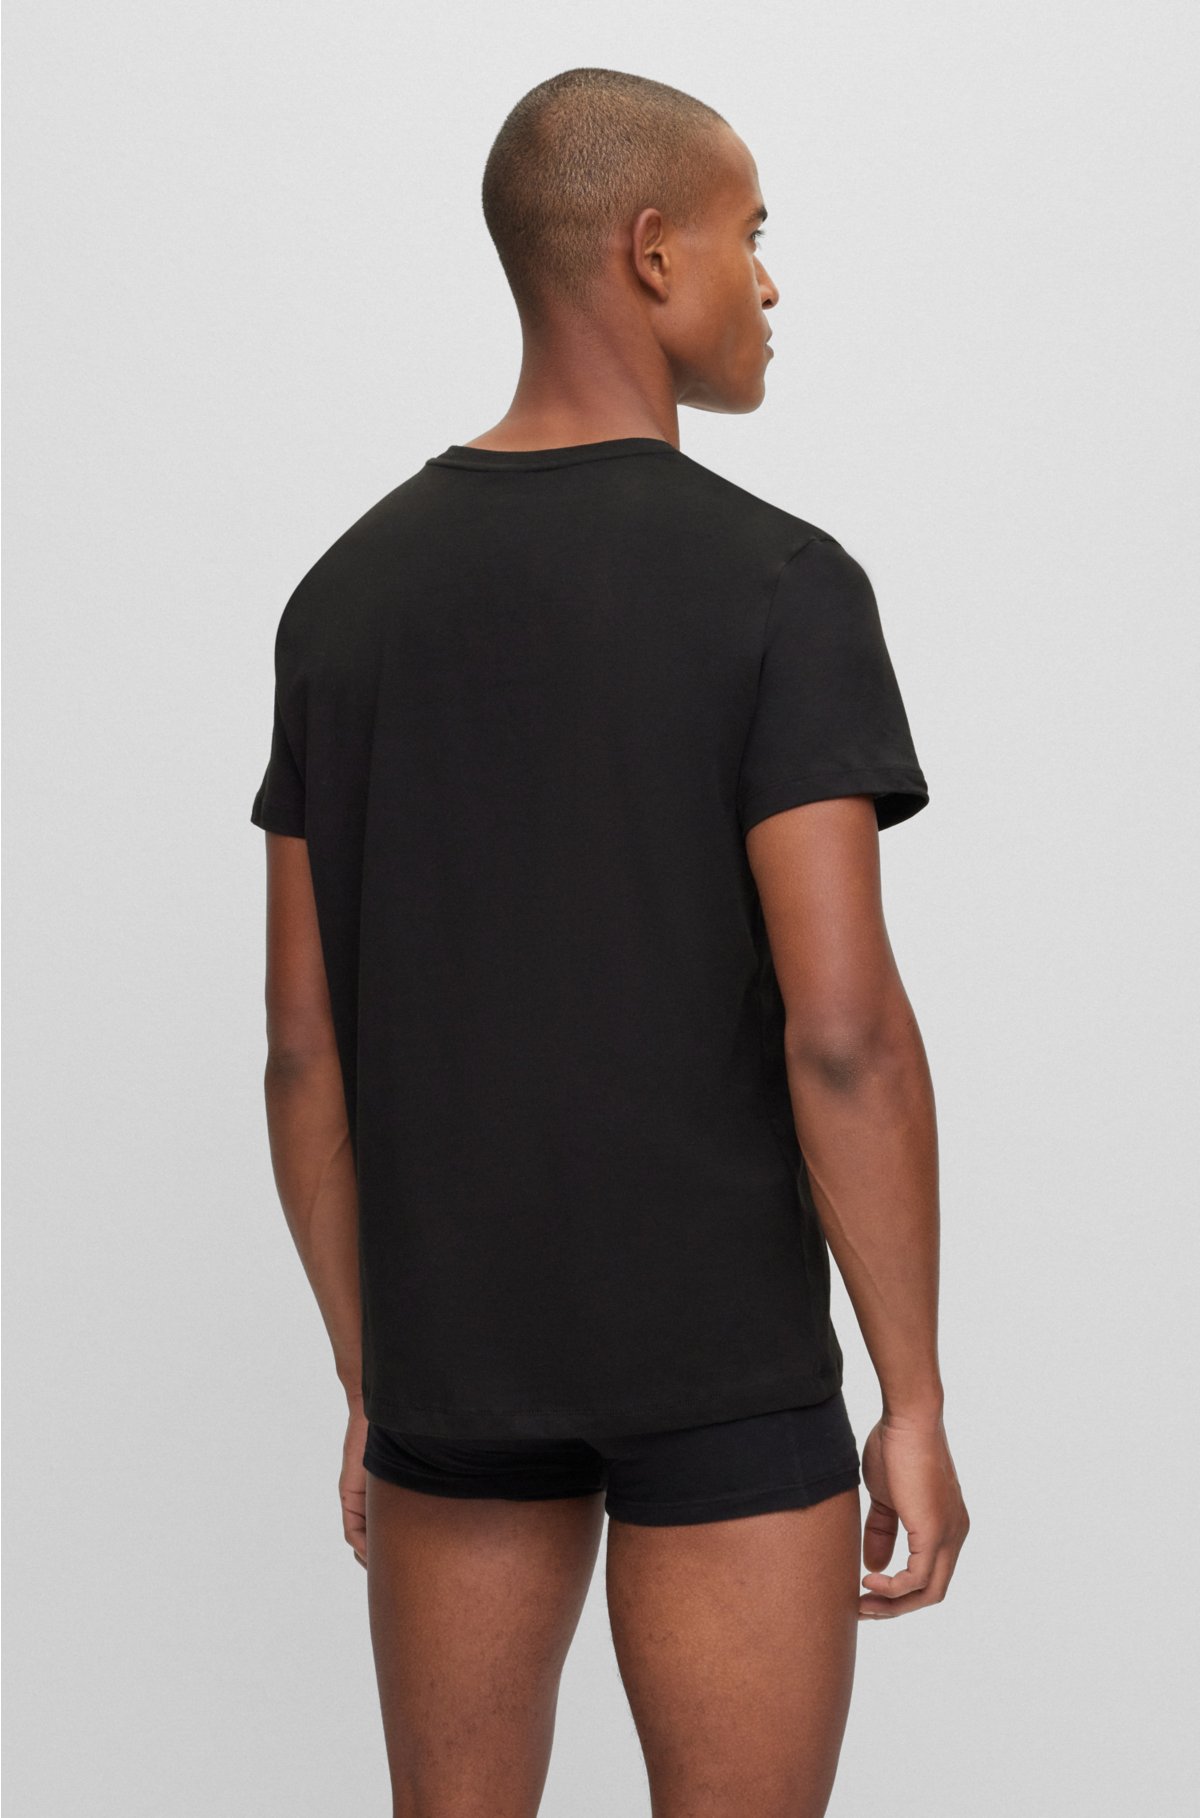 Cotton-jersey underwear T-shirt with logo print, Black